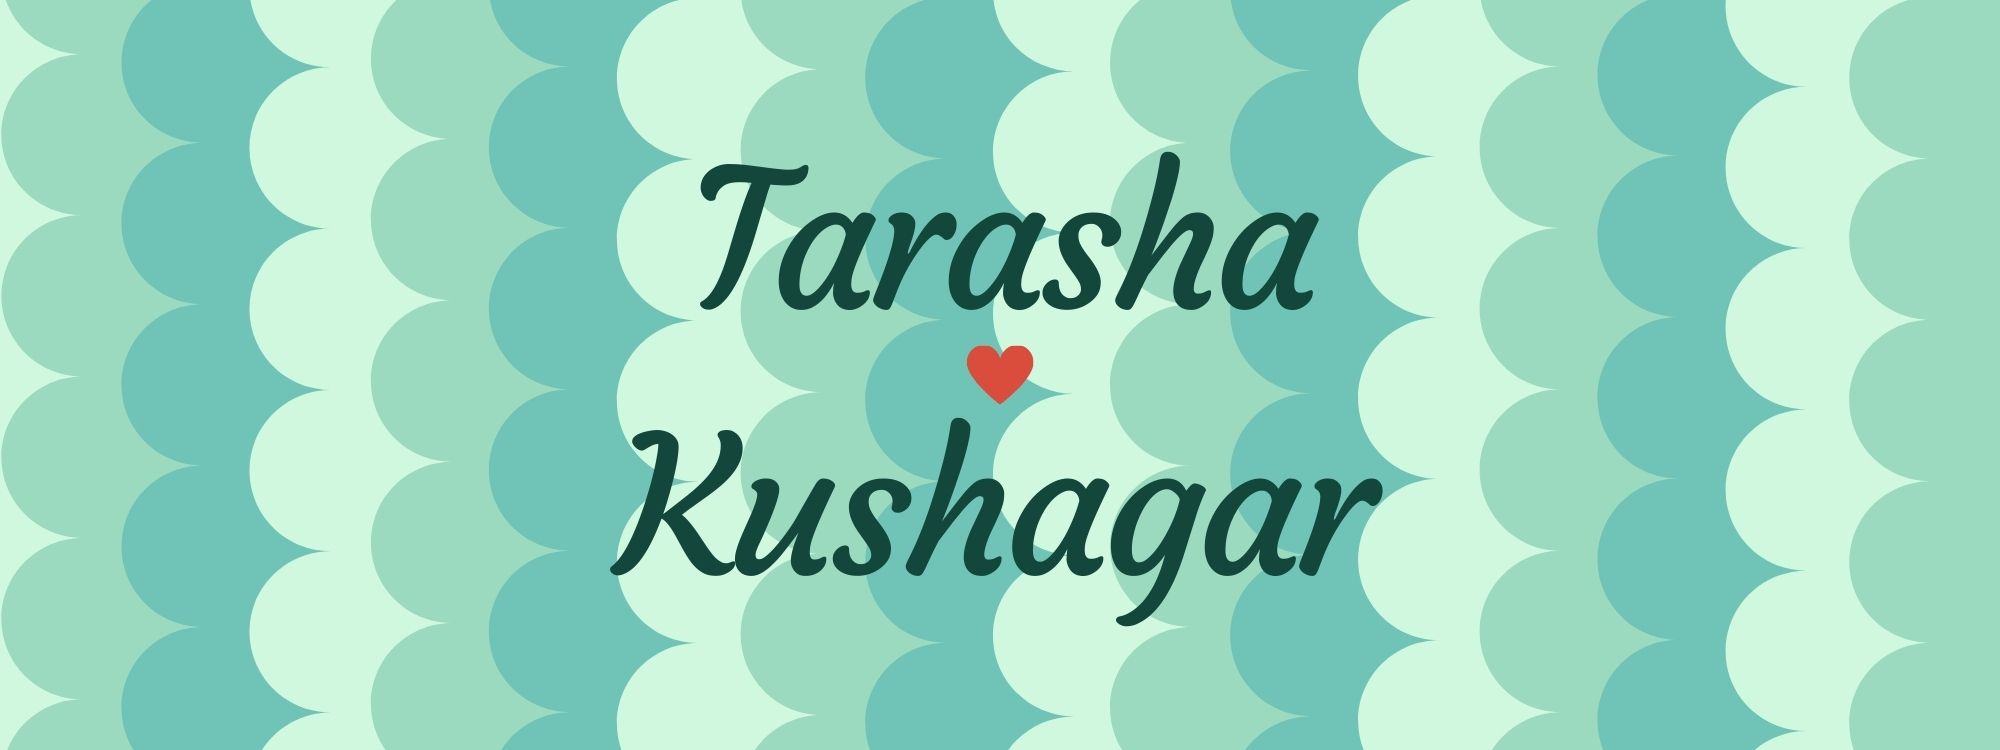 tarasha_kushagar